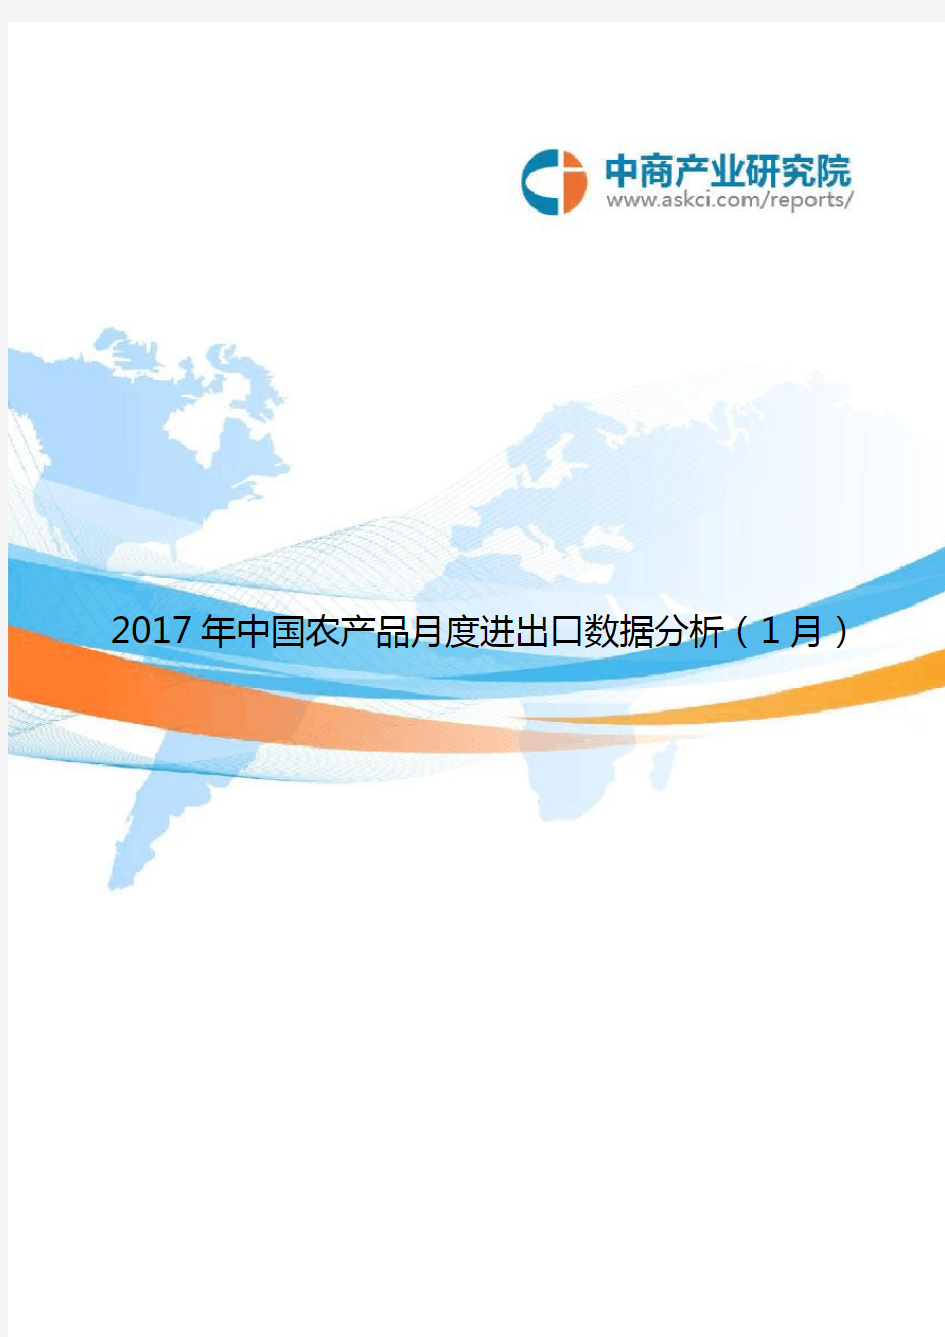 2017年中国农产品月度进出口数据分析(1月)